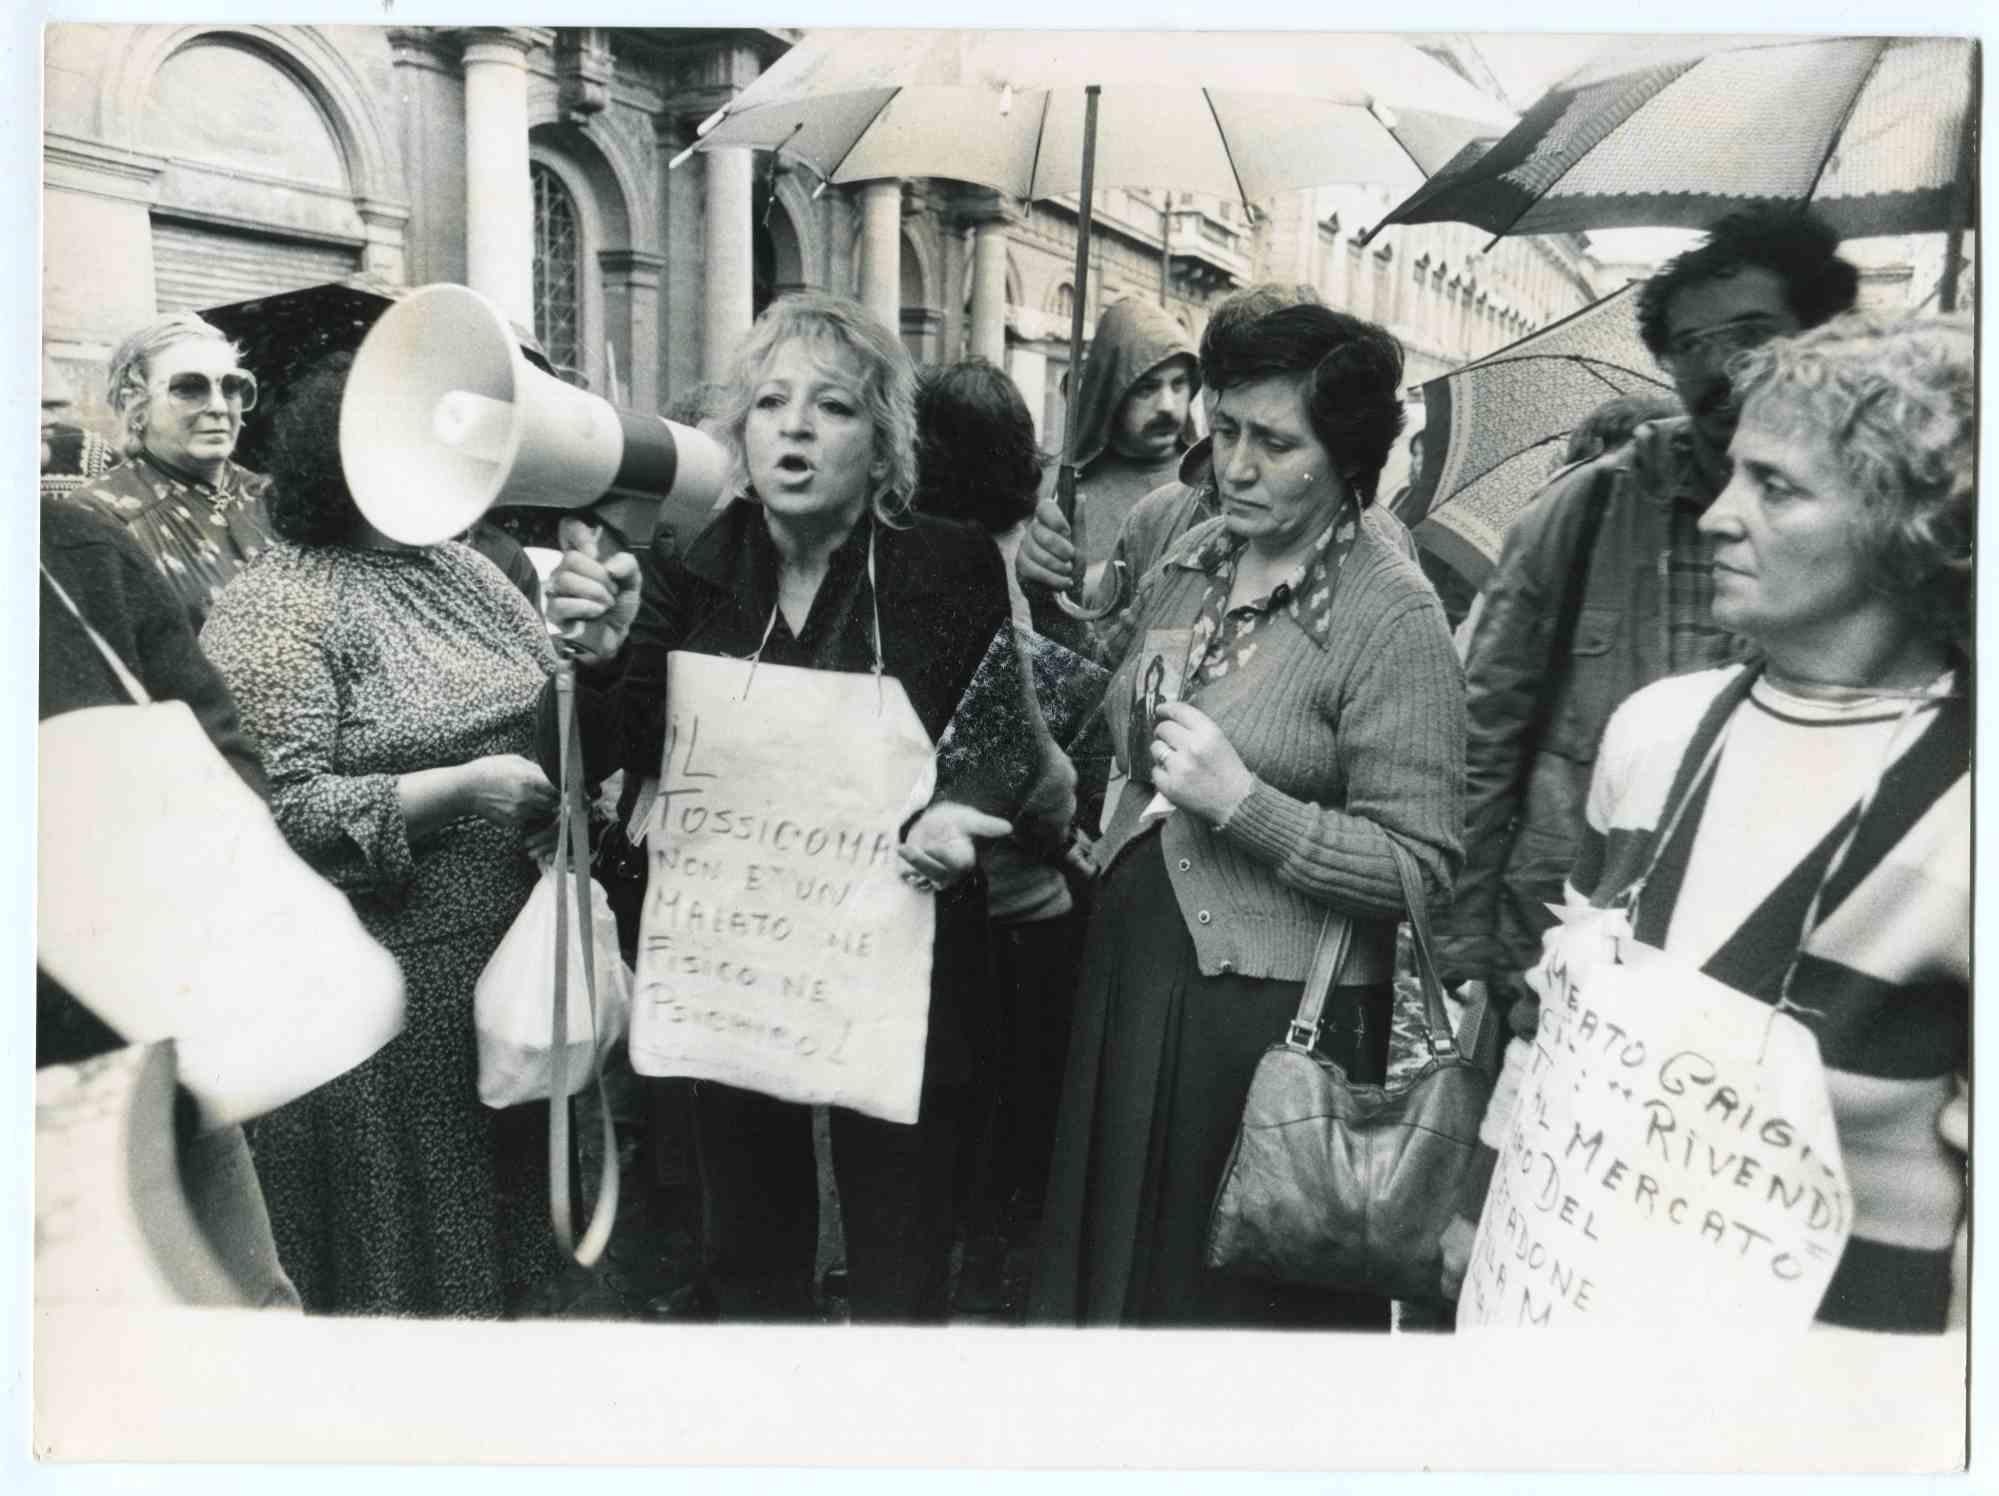 The Protest - Historische Fotografie über die feministische Bewegung - 1980